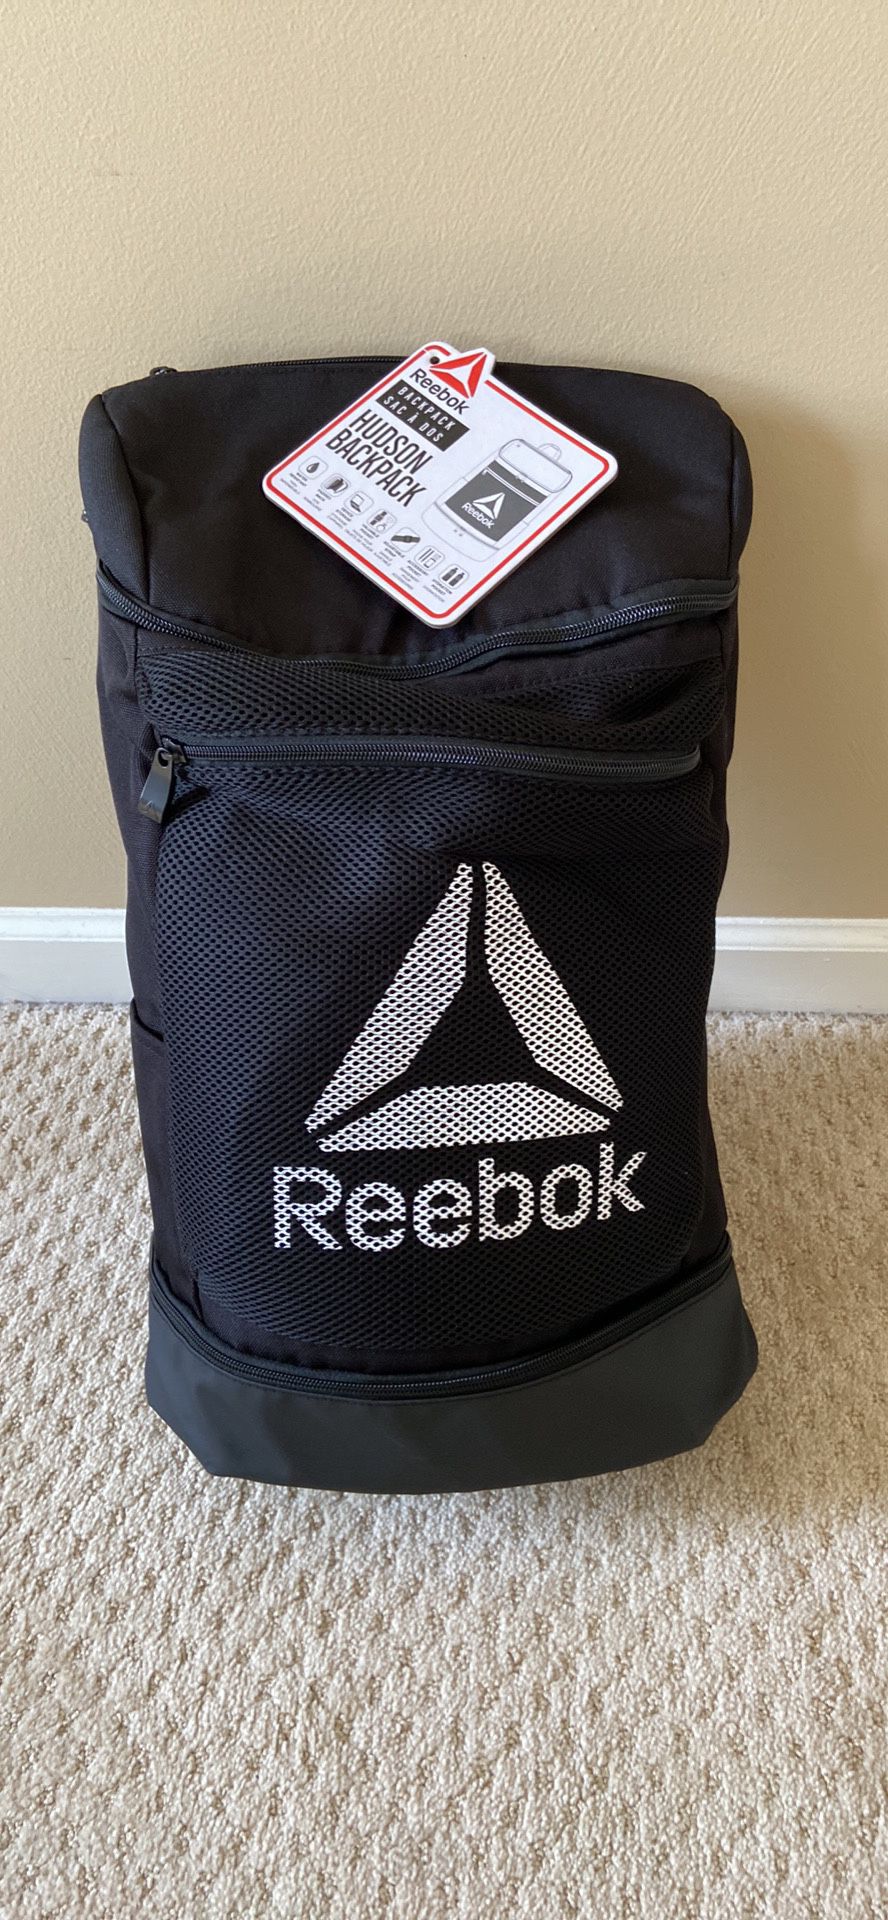 New Reebok Backpack 